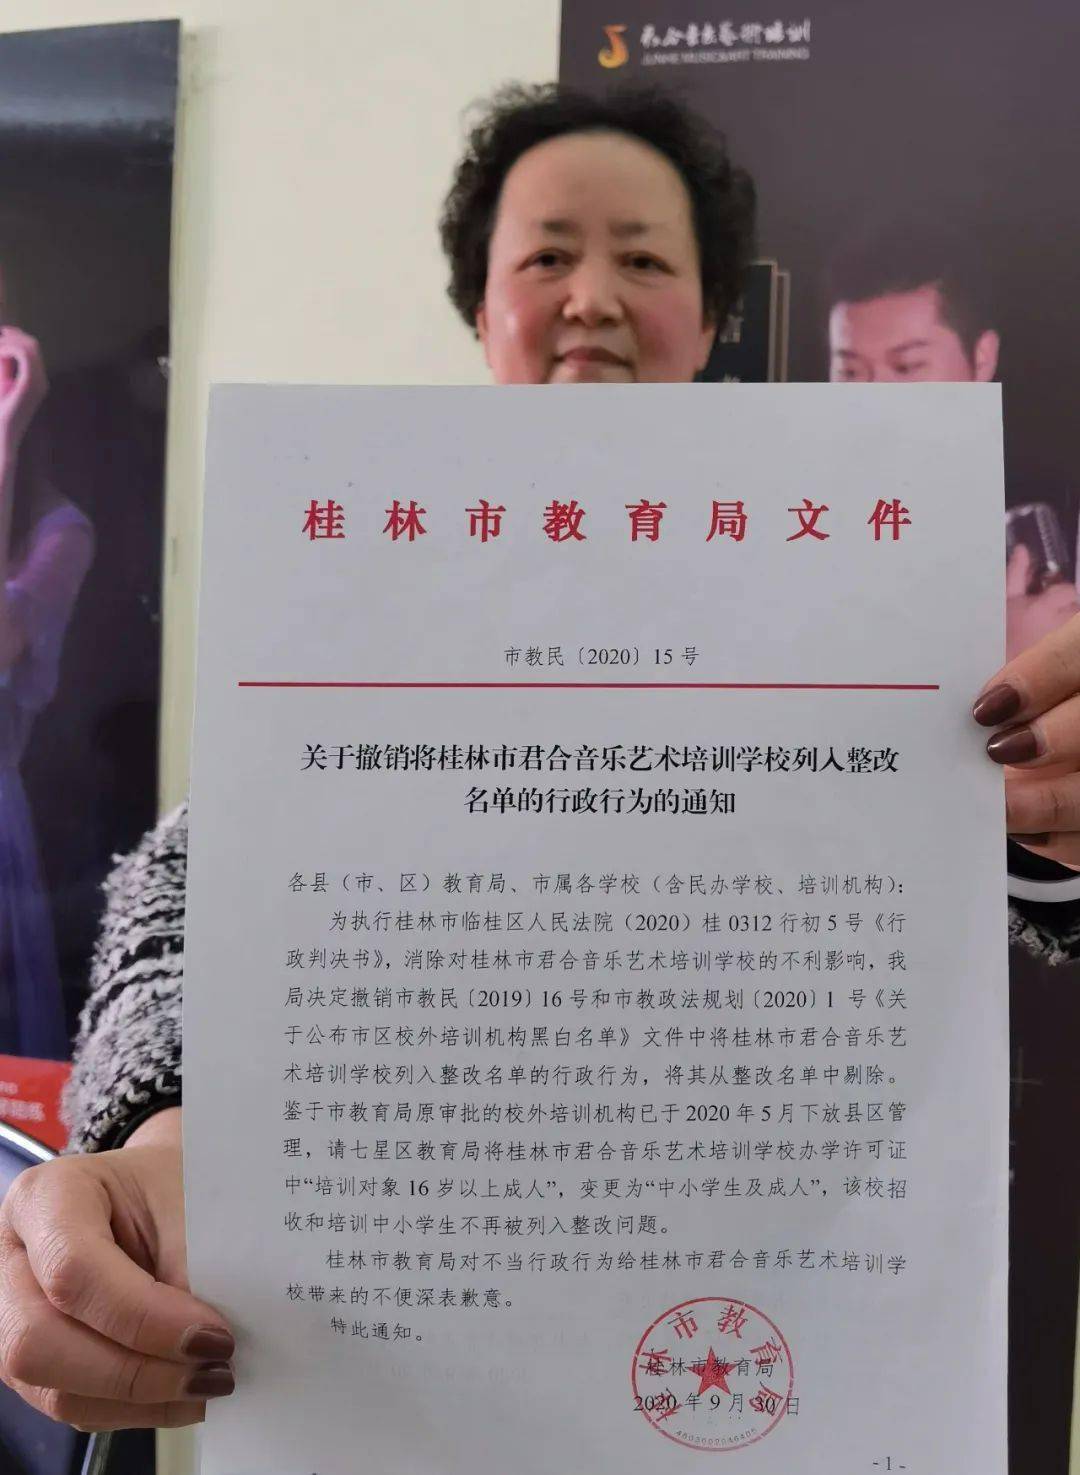 2014年10月27日,通过桂林市教育局盖章同意变更业务范围不受年龄限制